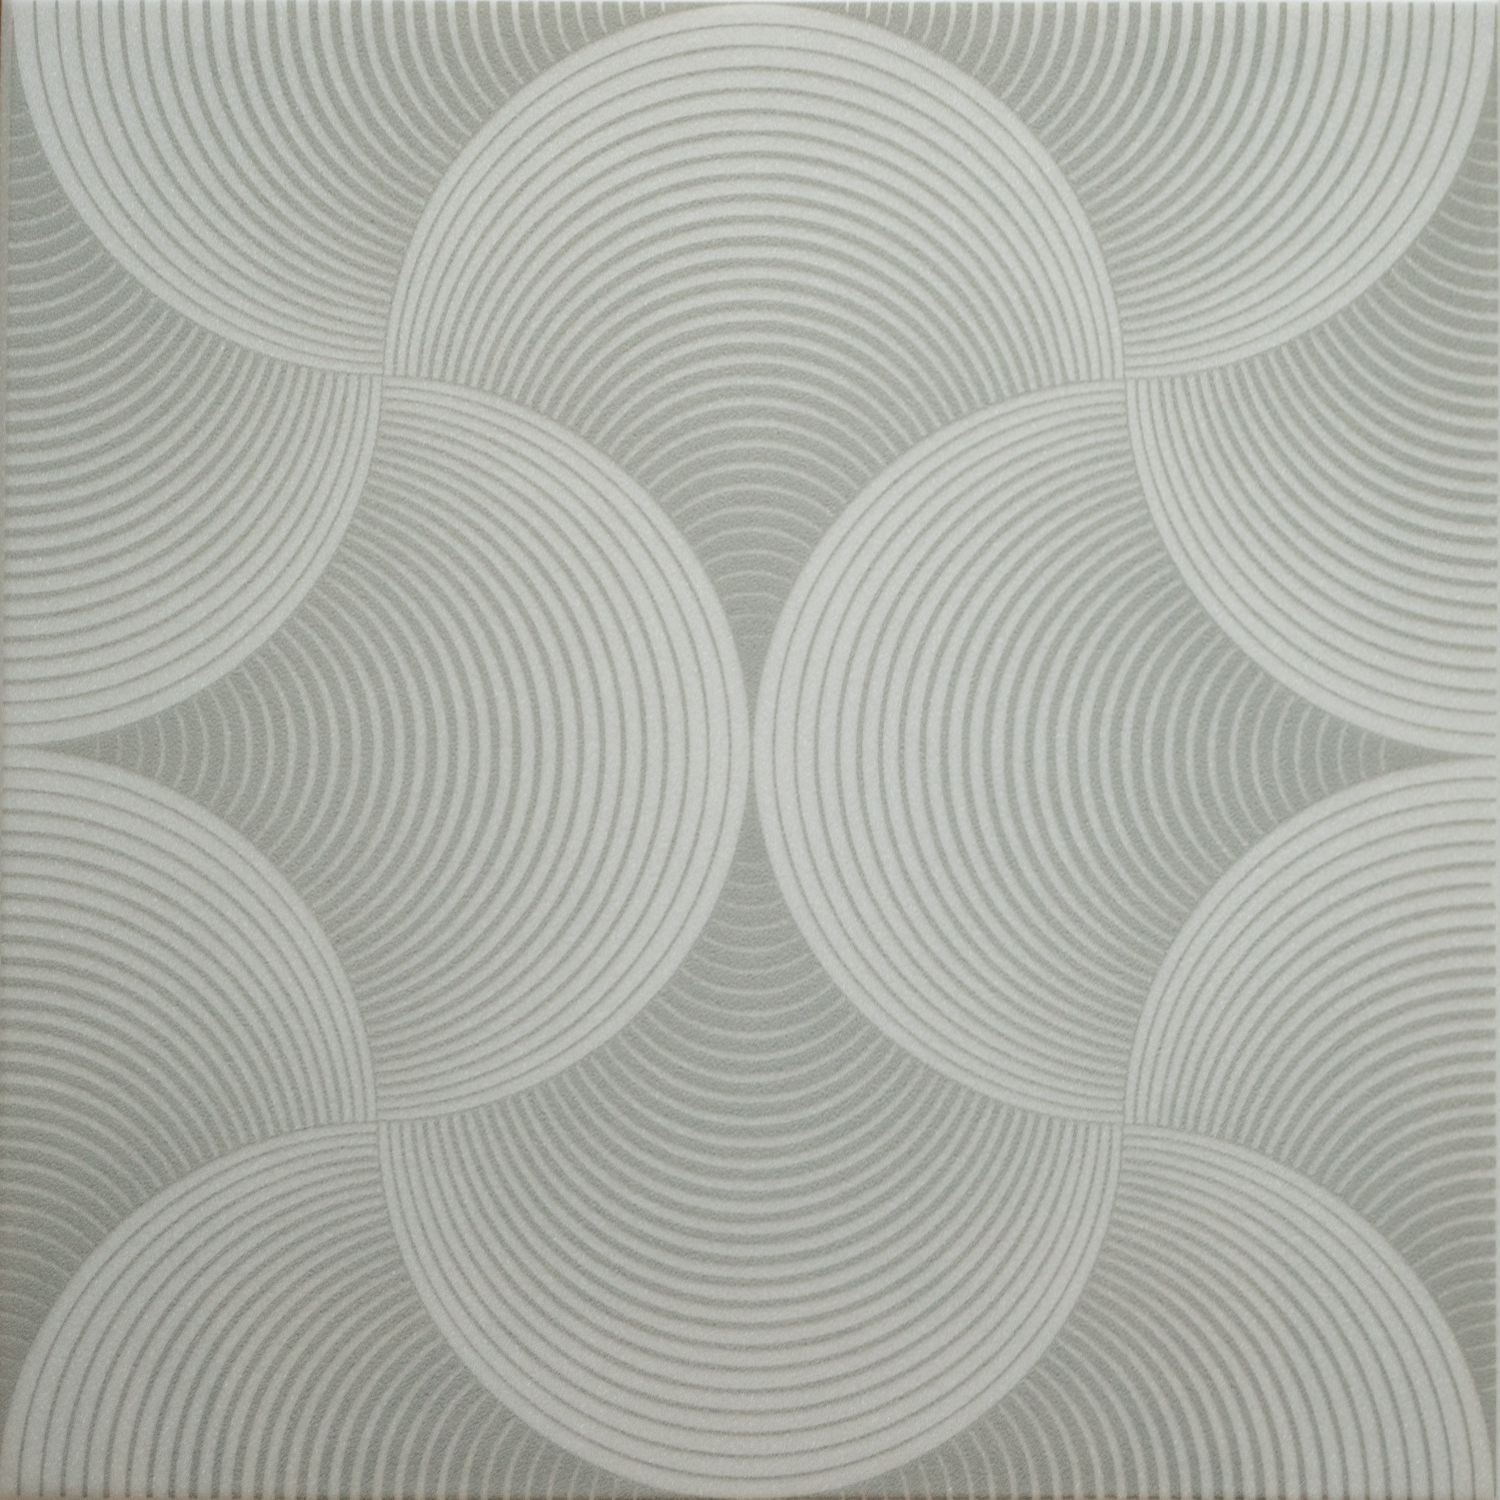 Dekorativní polystyrenová deska TRANS 2S šedá (50 x 50 cm) 2 m2